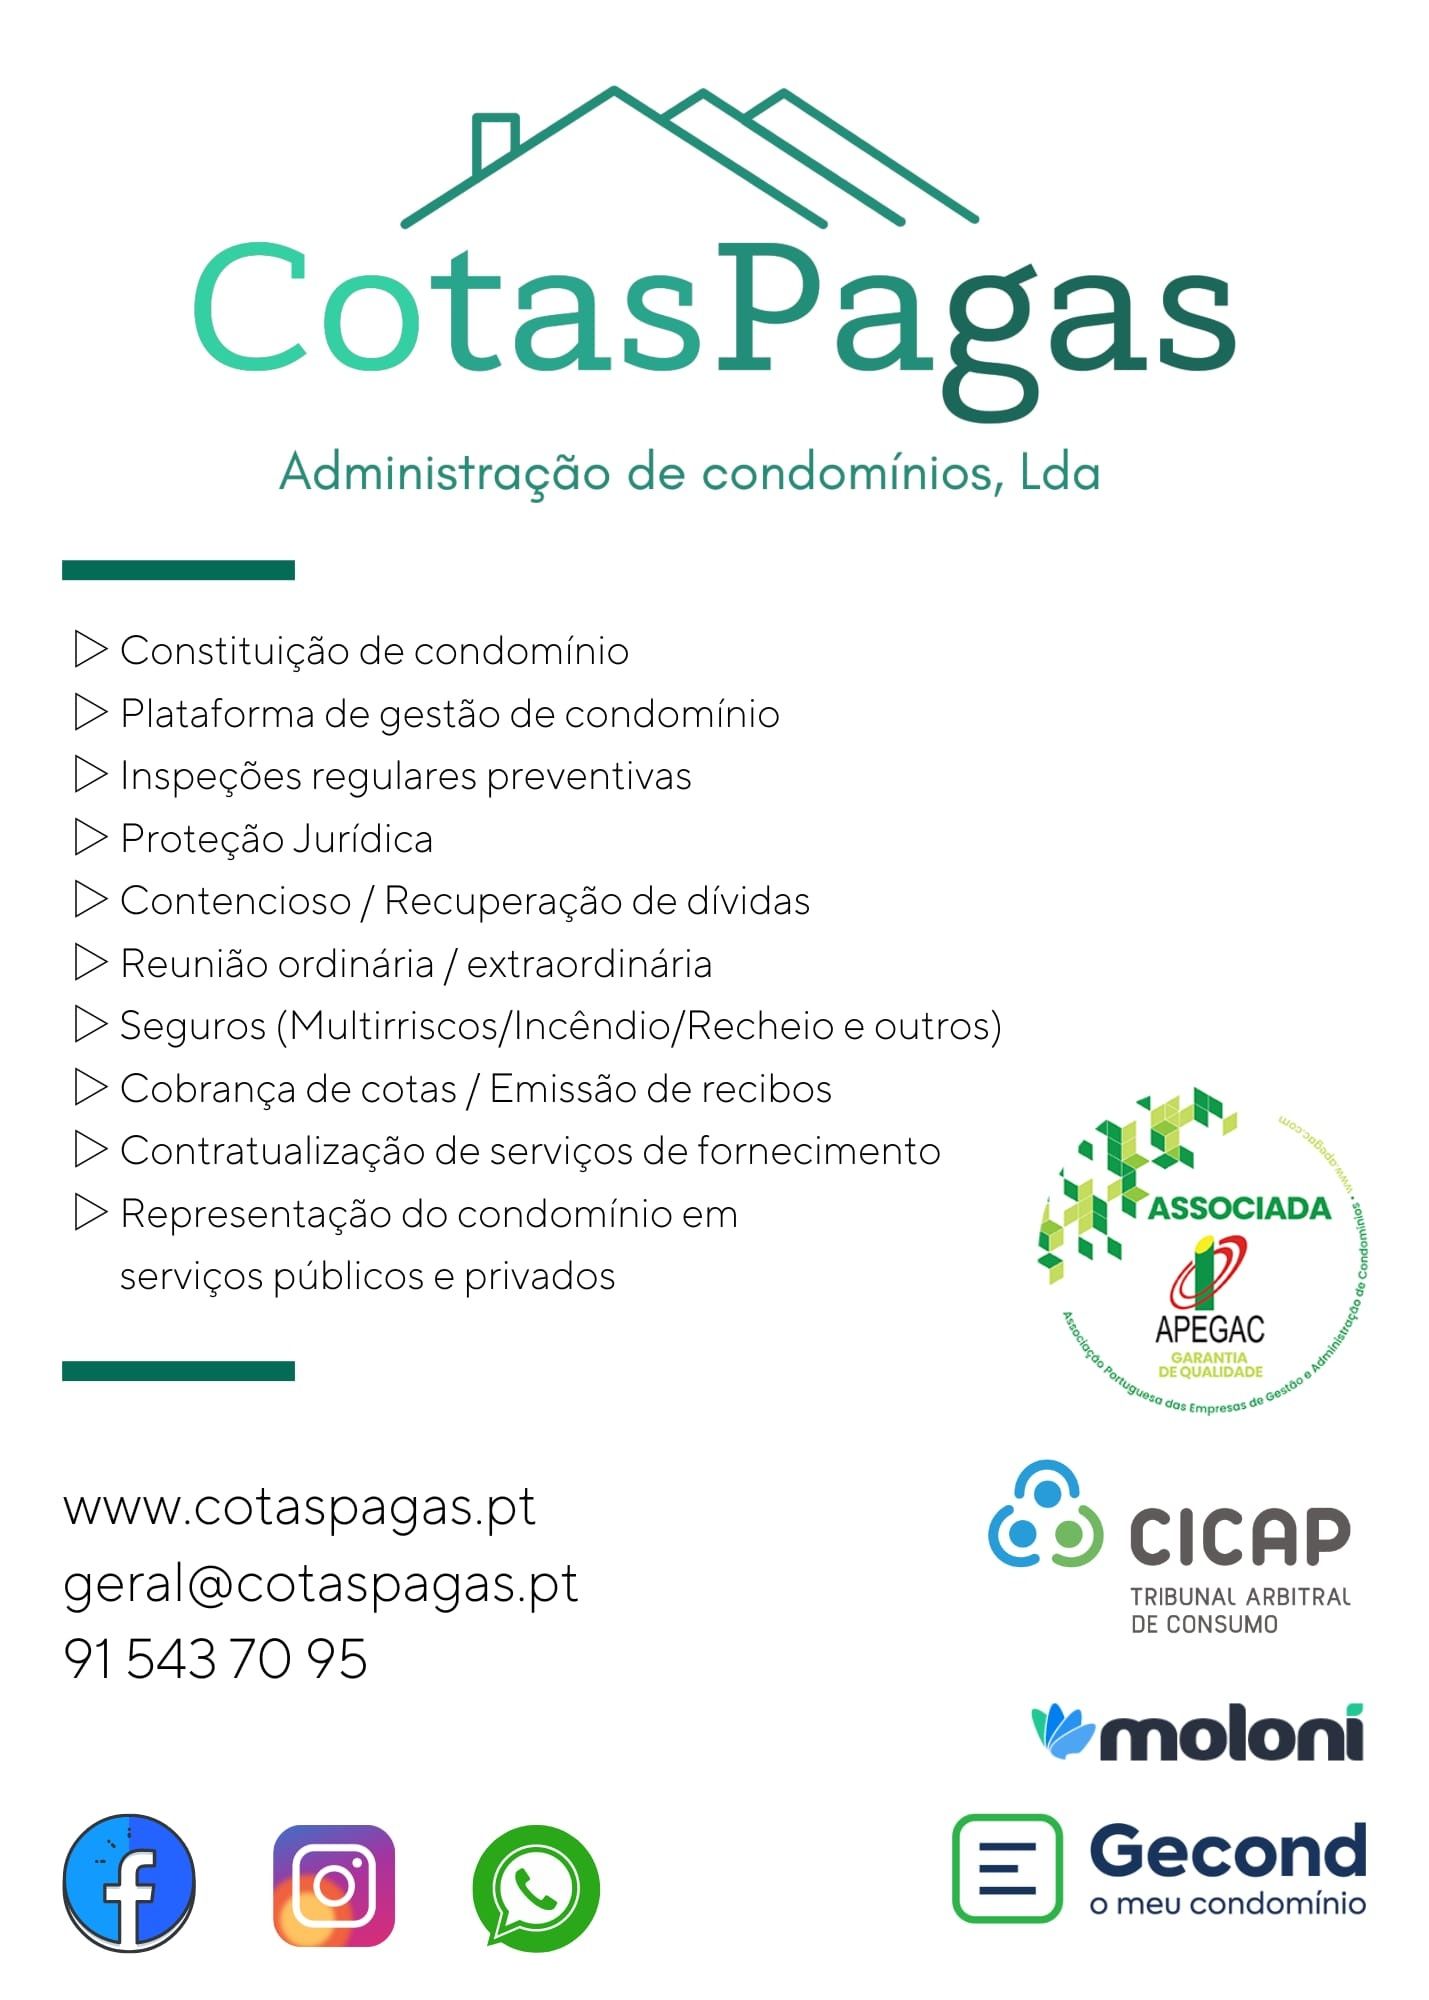 CotasPagas - Administração de Condomínios,  Lda